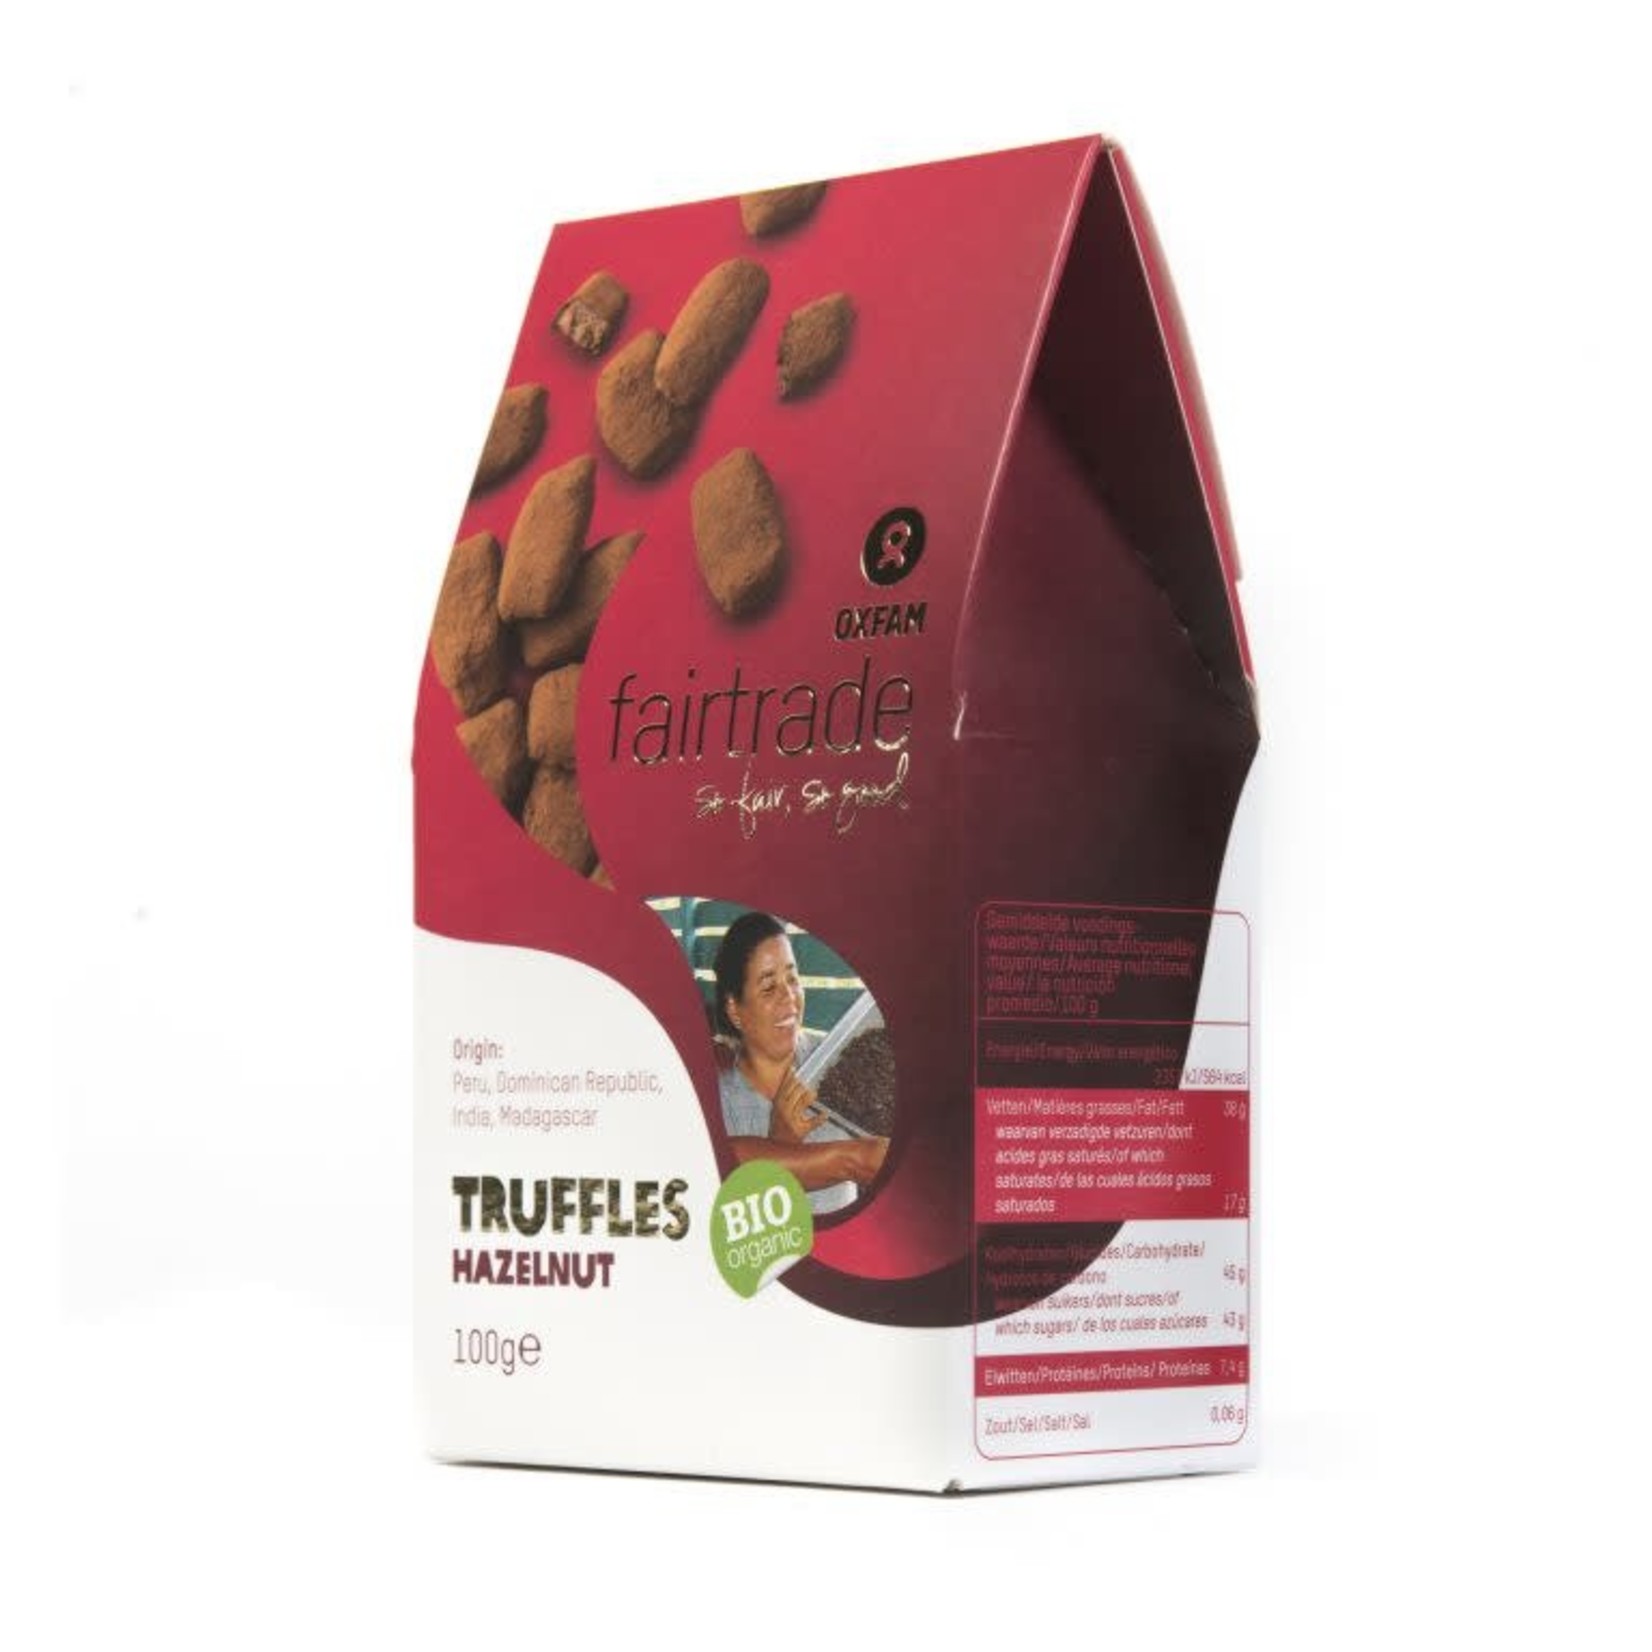 Oxfam truffels hazelnoot bio